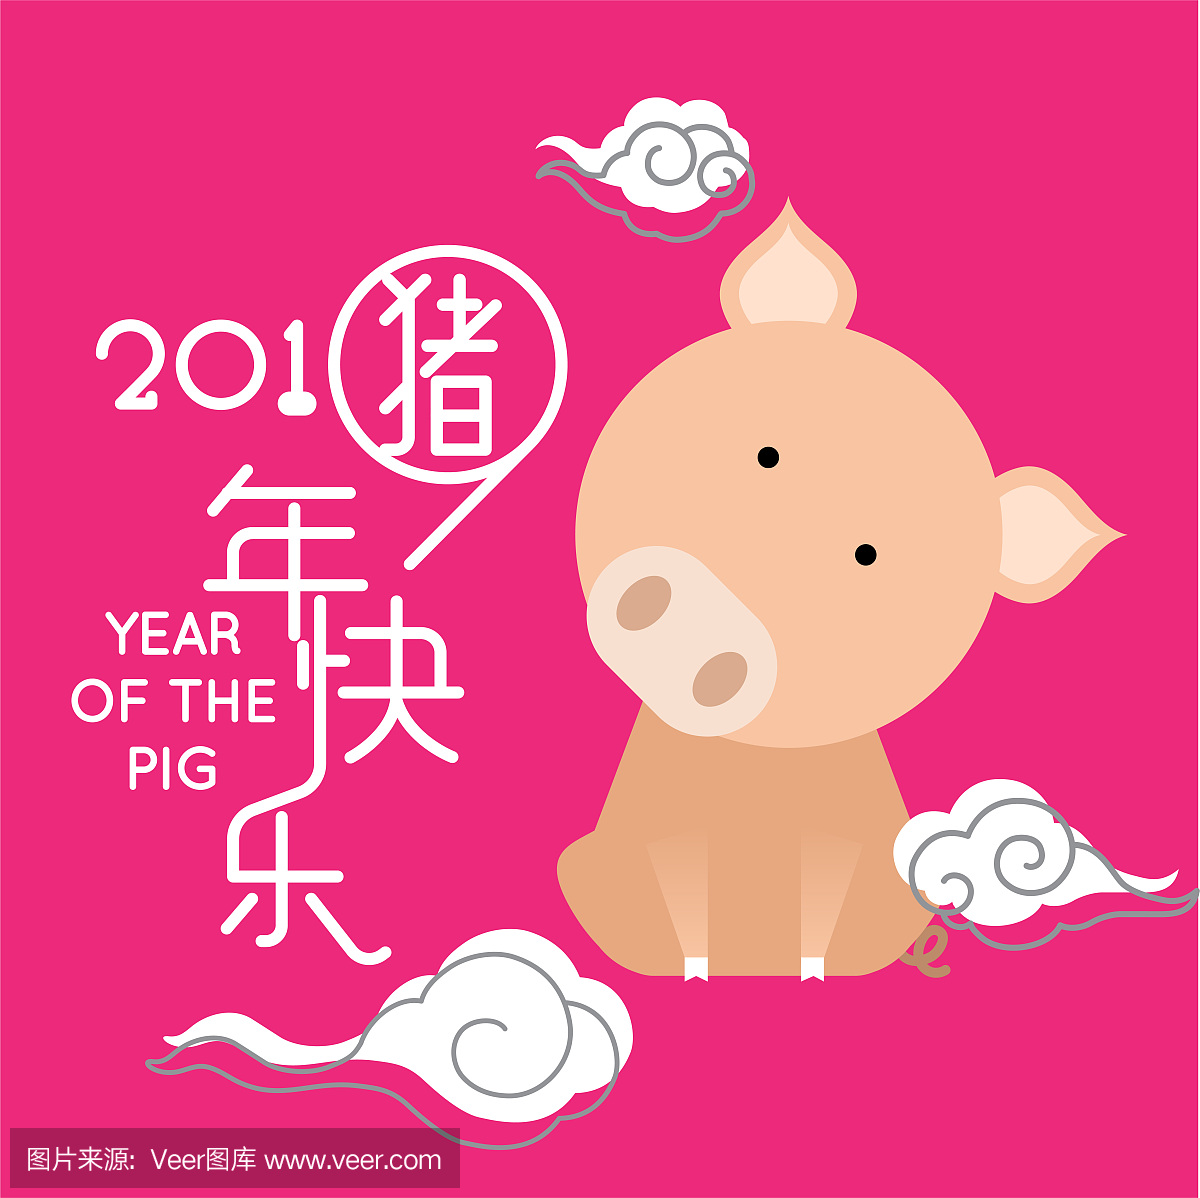 中国农历新年快乐2019年,可爱的卡通猪猪年。